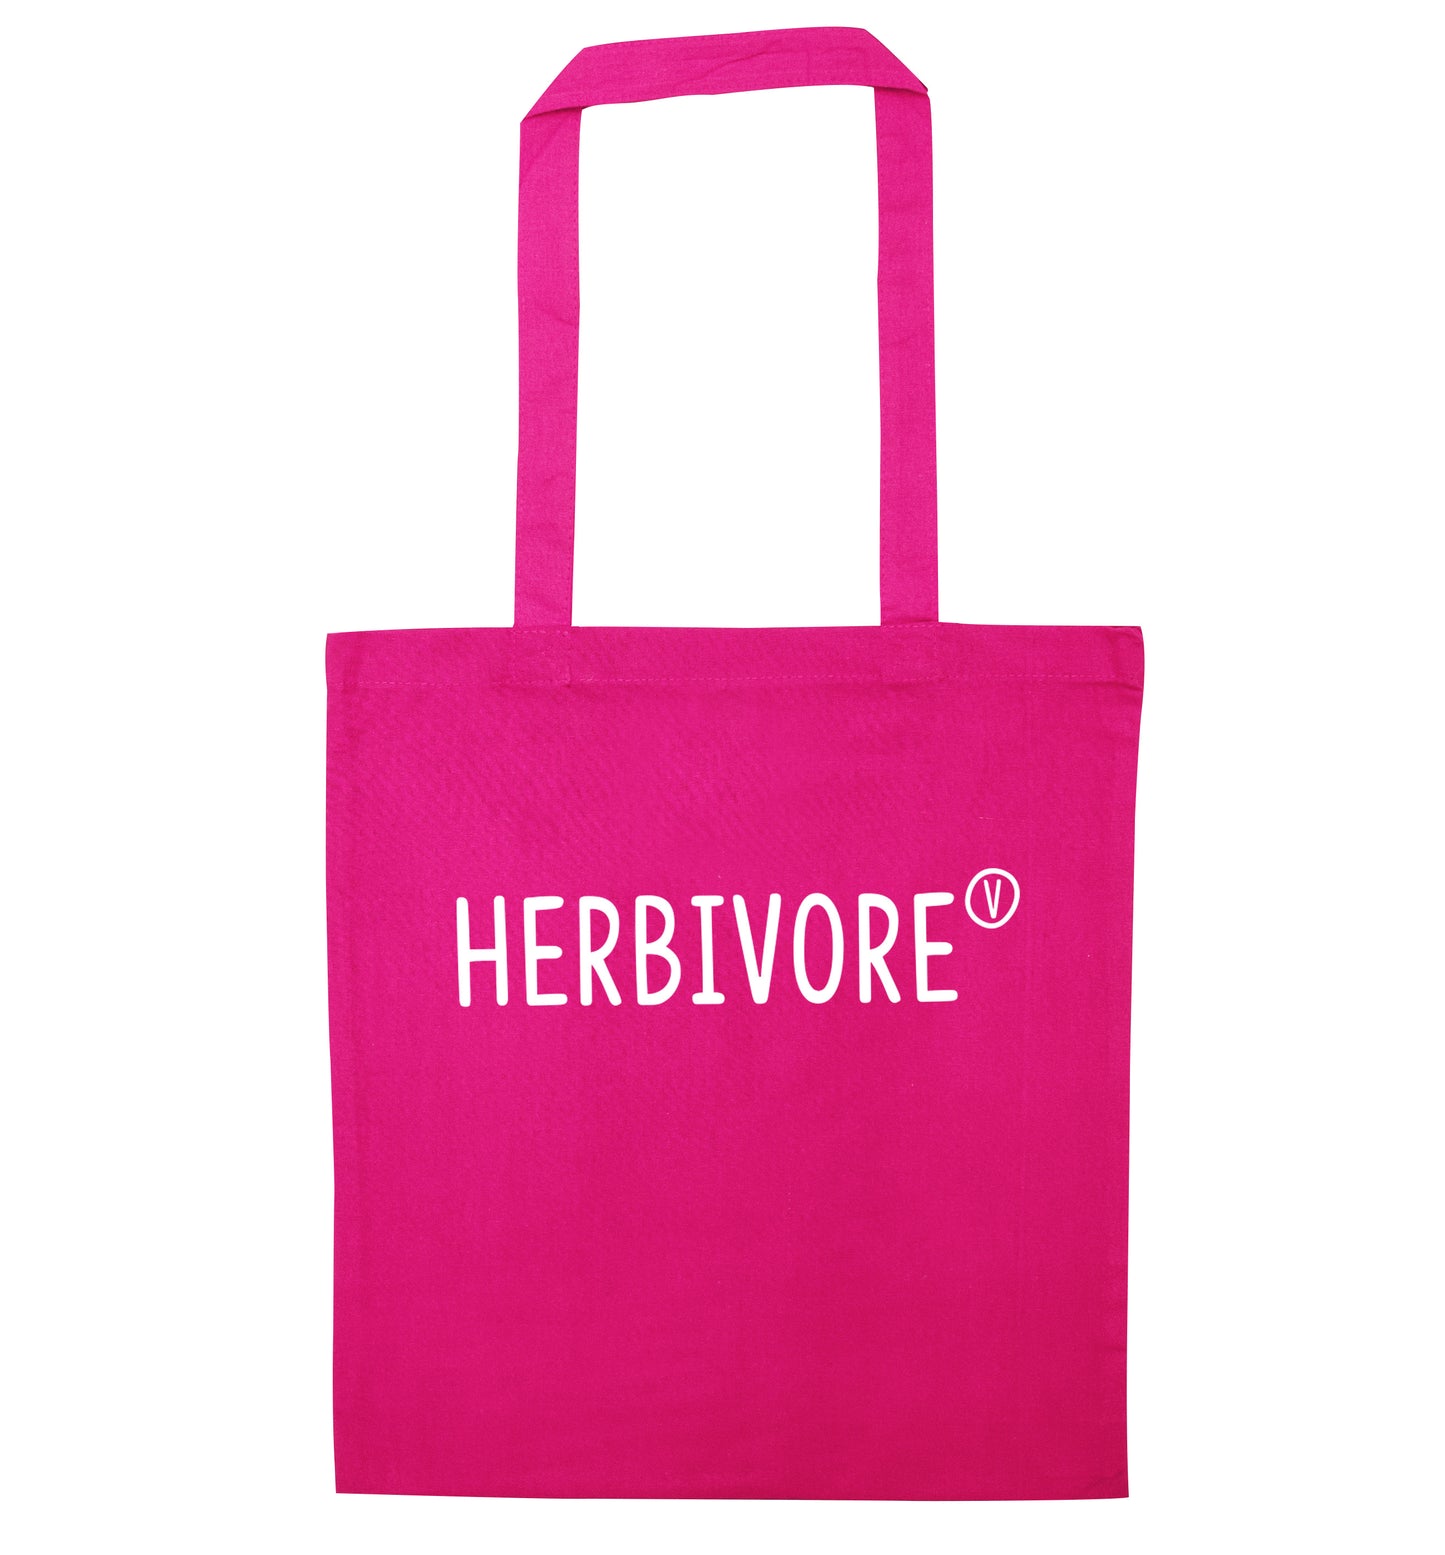 Herbivore pink tote bag